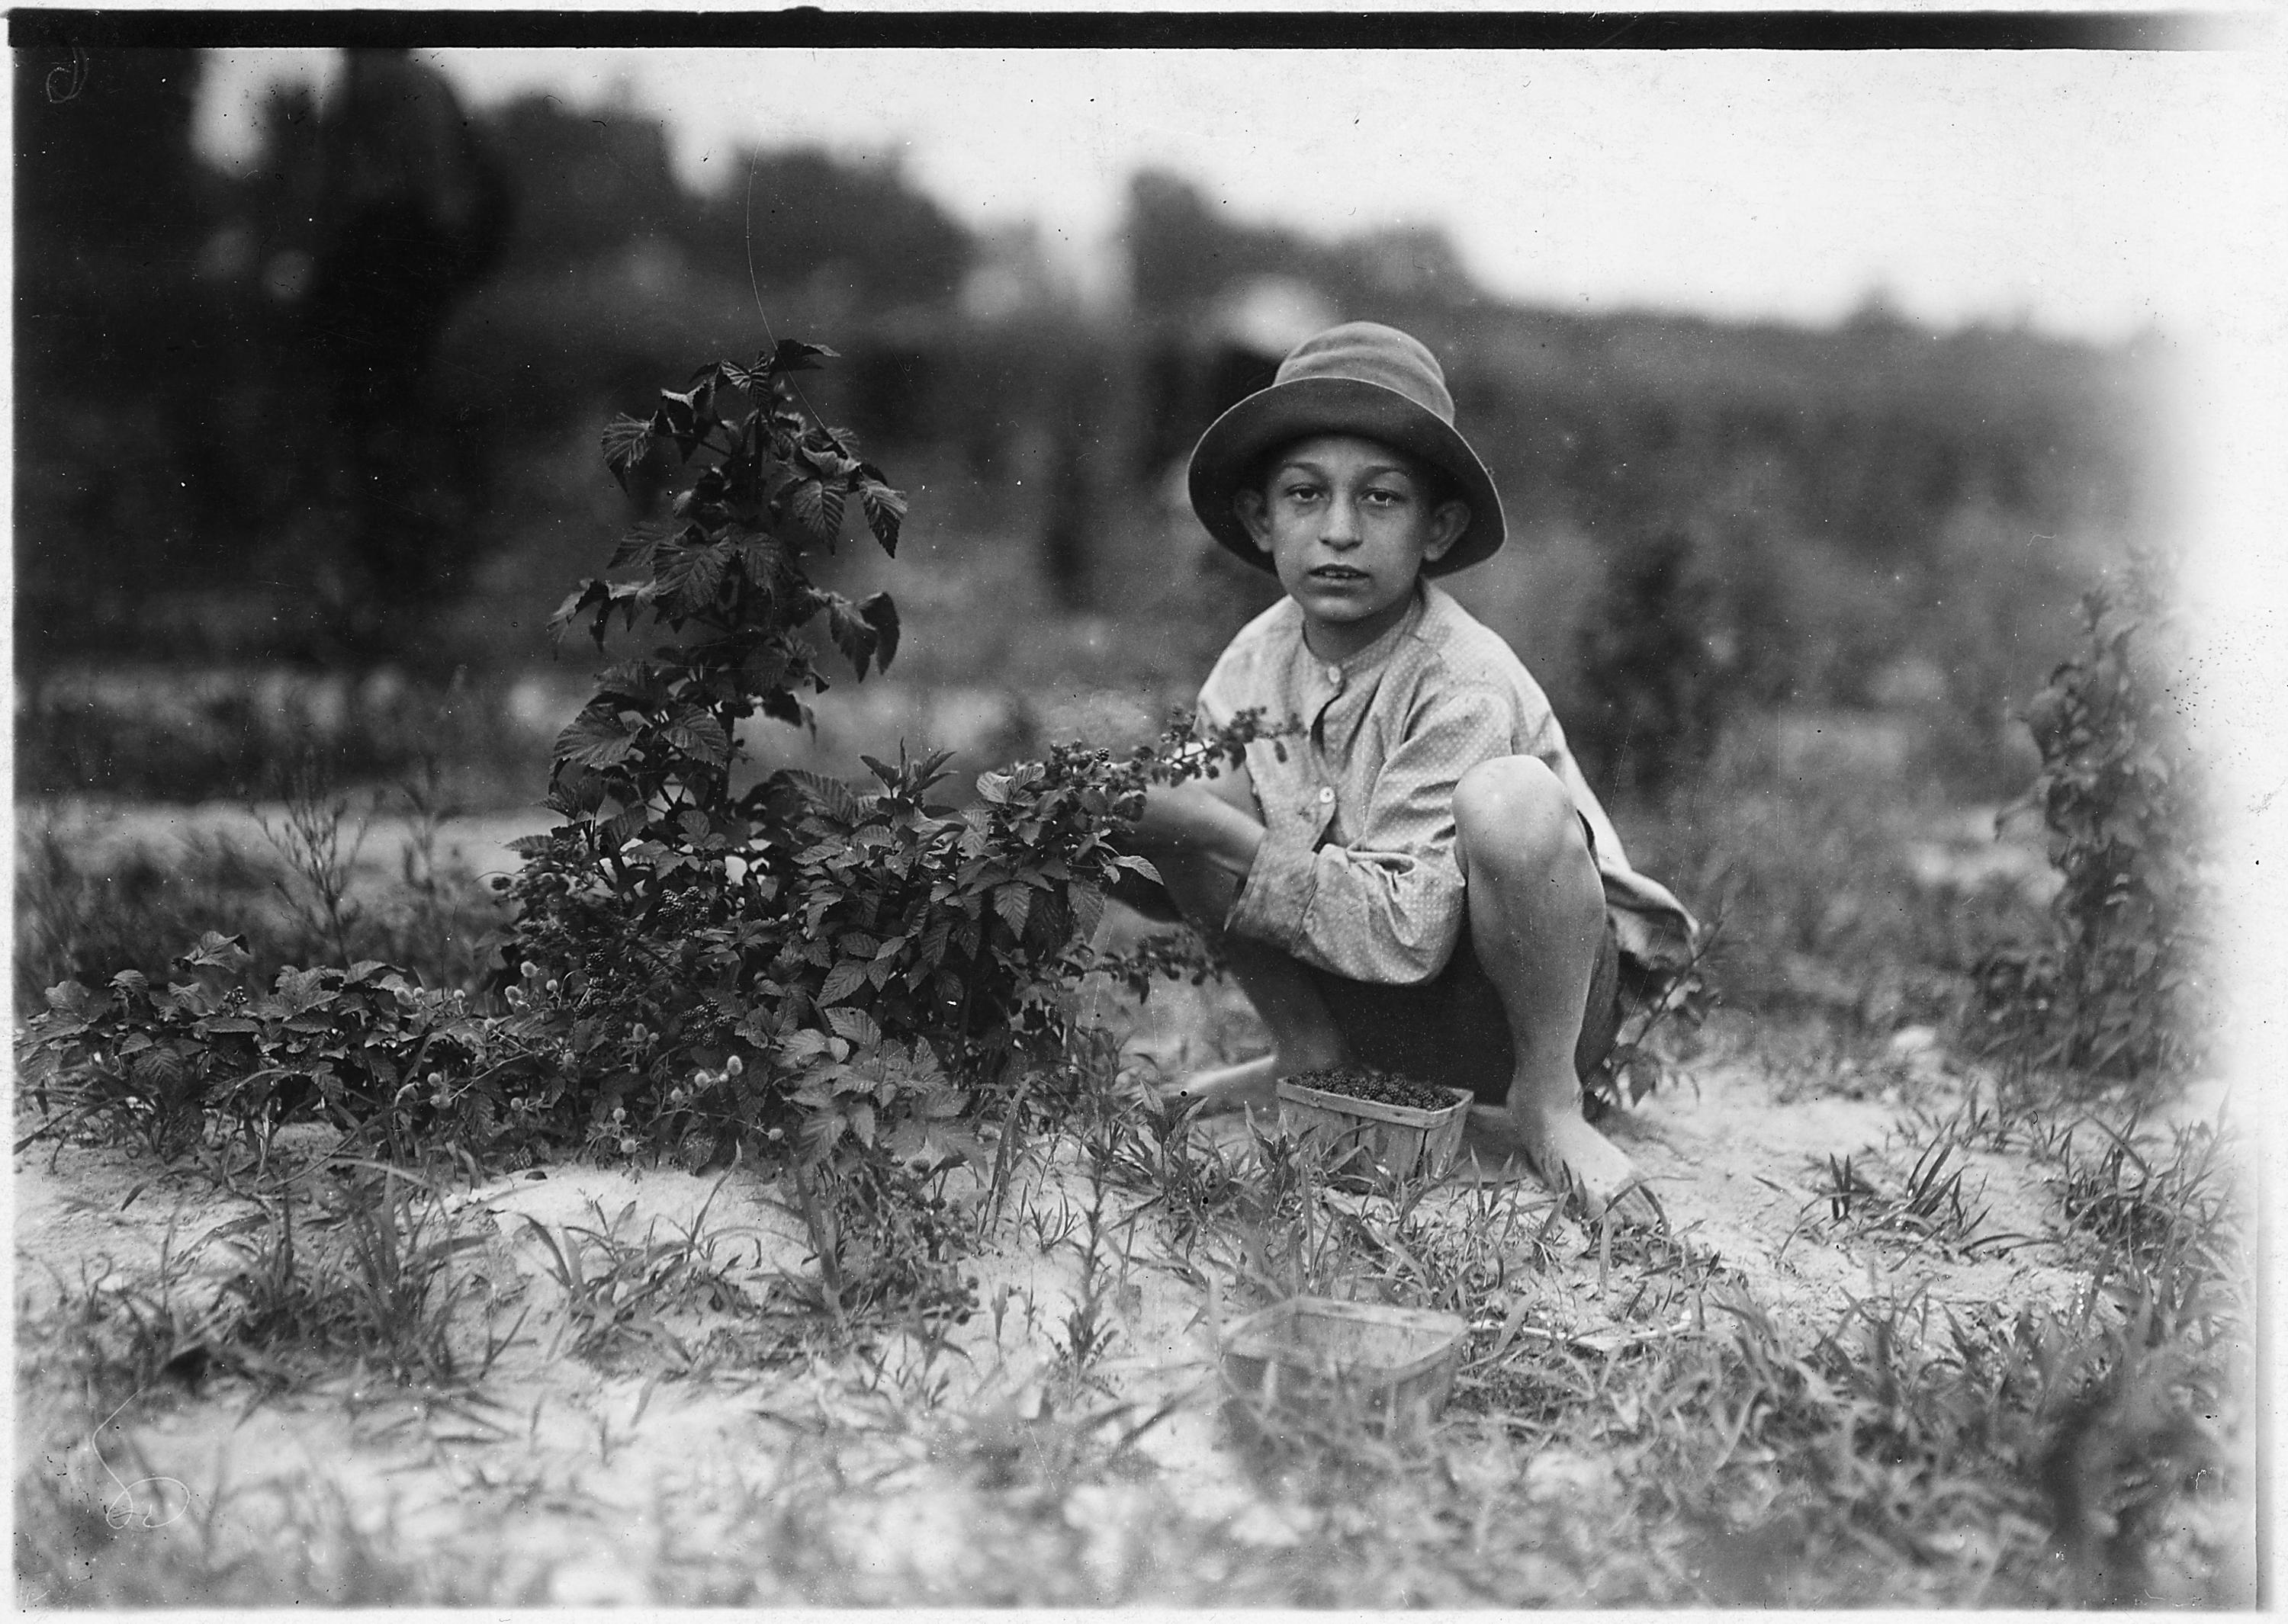 Lewis Hine, child labor